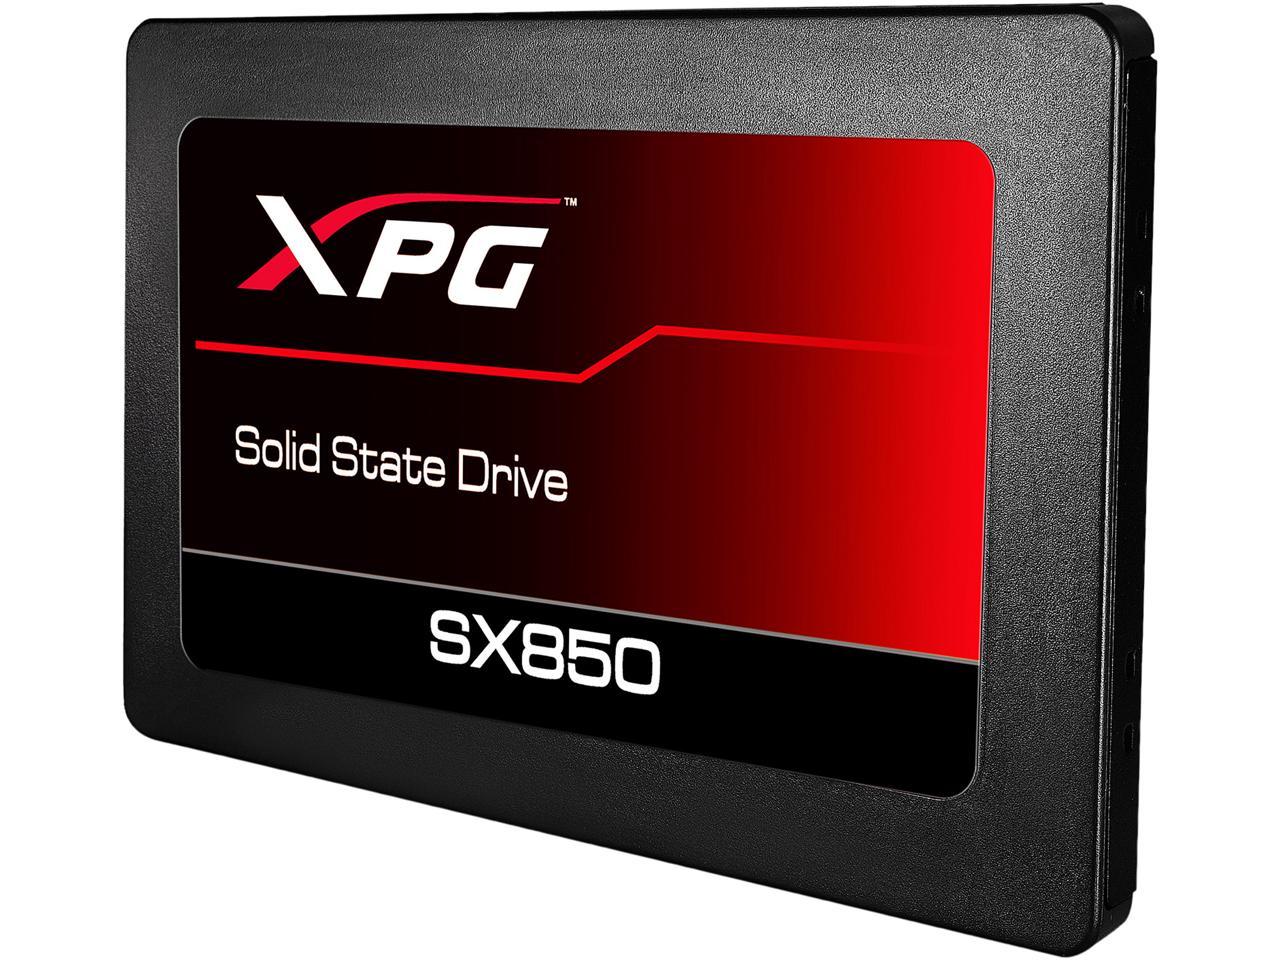 ADATA XPG SX850 (SSD-SX850-128G) 2.5″ 128GB SATA III 3D NAND Internal Solid State Drive (SSD)